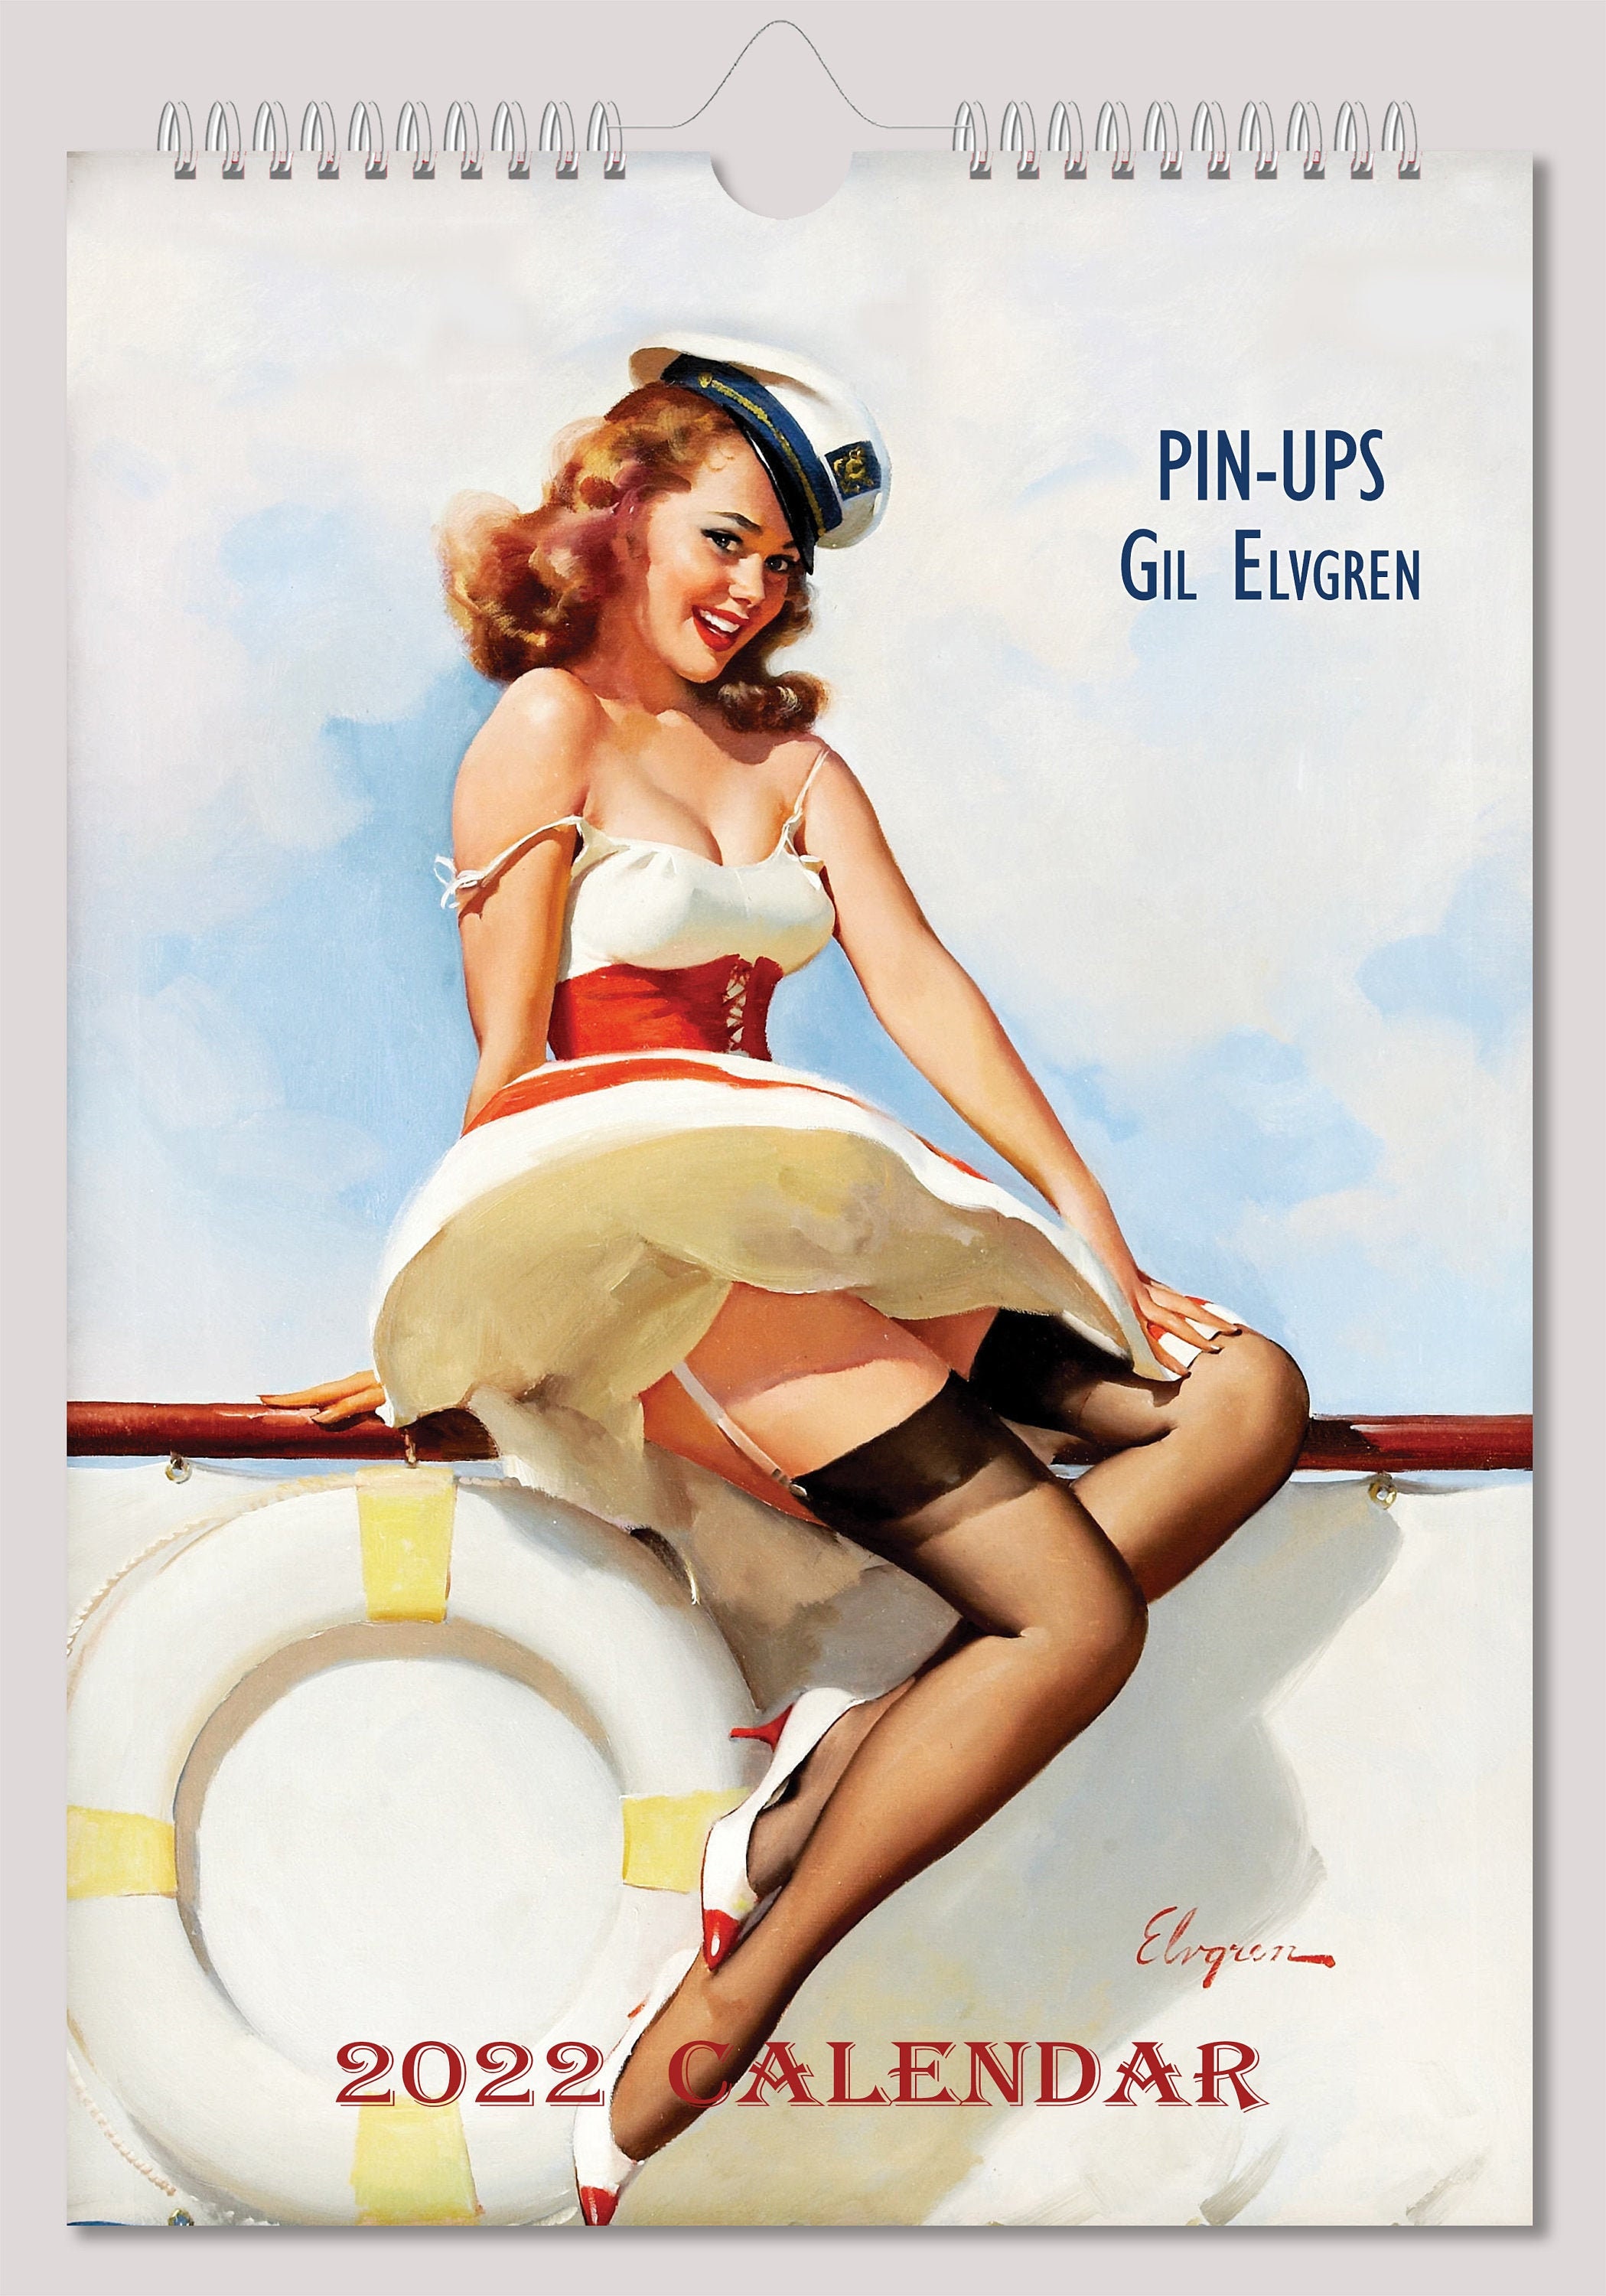 gil-elvgren-wall-calendar-2022-pin-up-girl-retro-vintage-a4-etsy